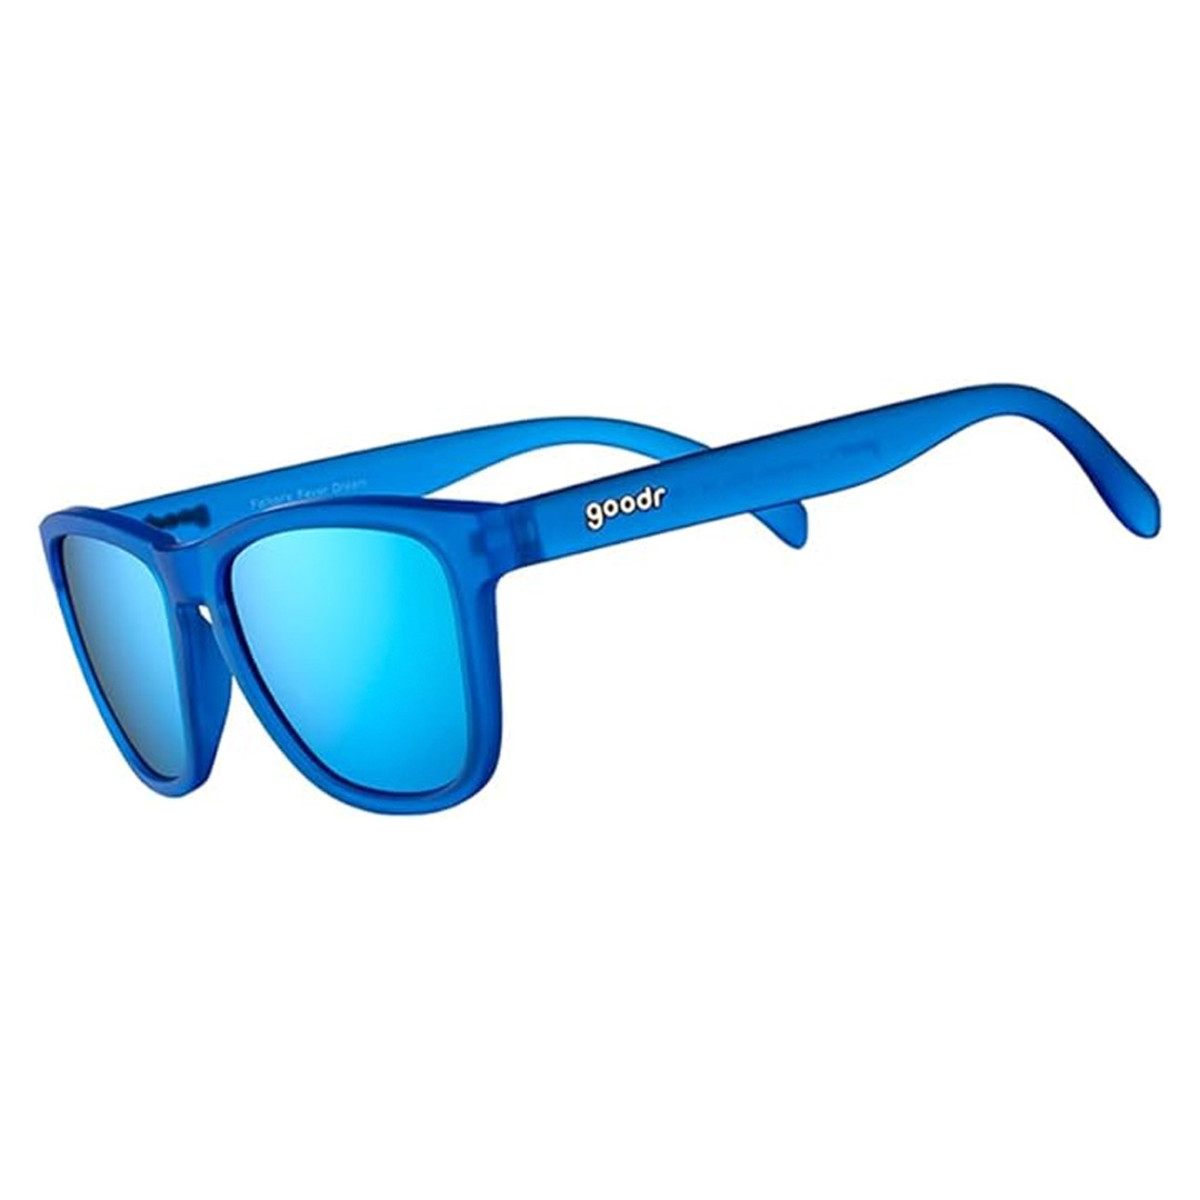 https://www.mensjournal.com/.image/t_share/MjA0OTc0NzY5OTcwMzU4MDEy/goodr-og-sunglasses-in-blueblue.jpg